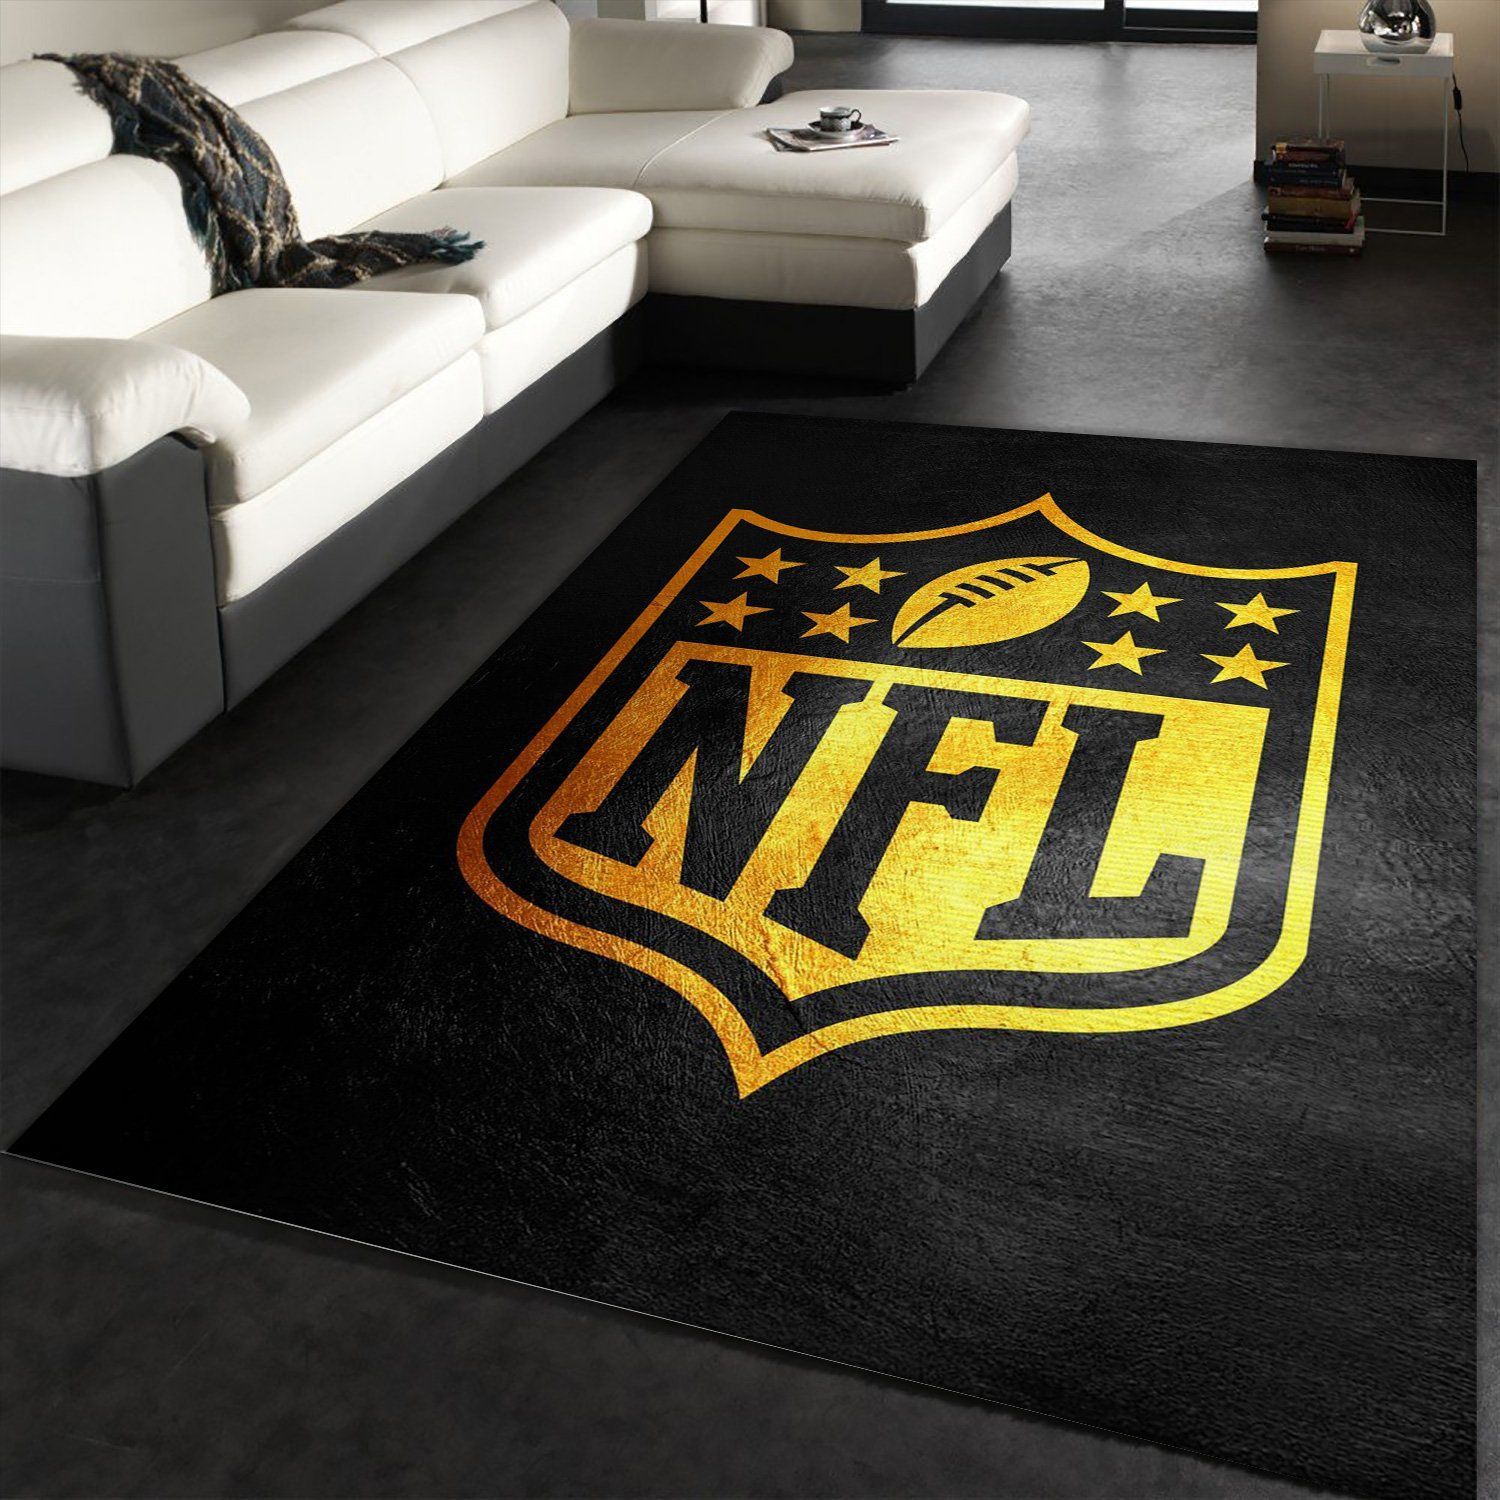 Nfl Black And Gold NFL Team Logos Floor home decoration carpet rug